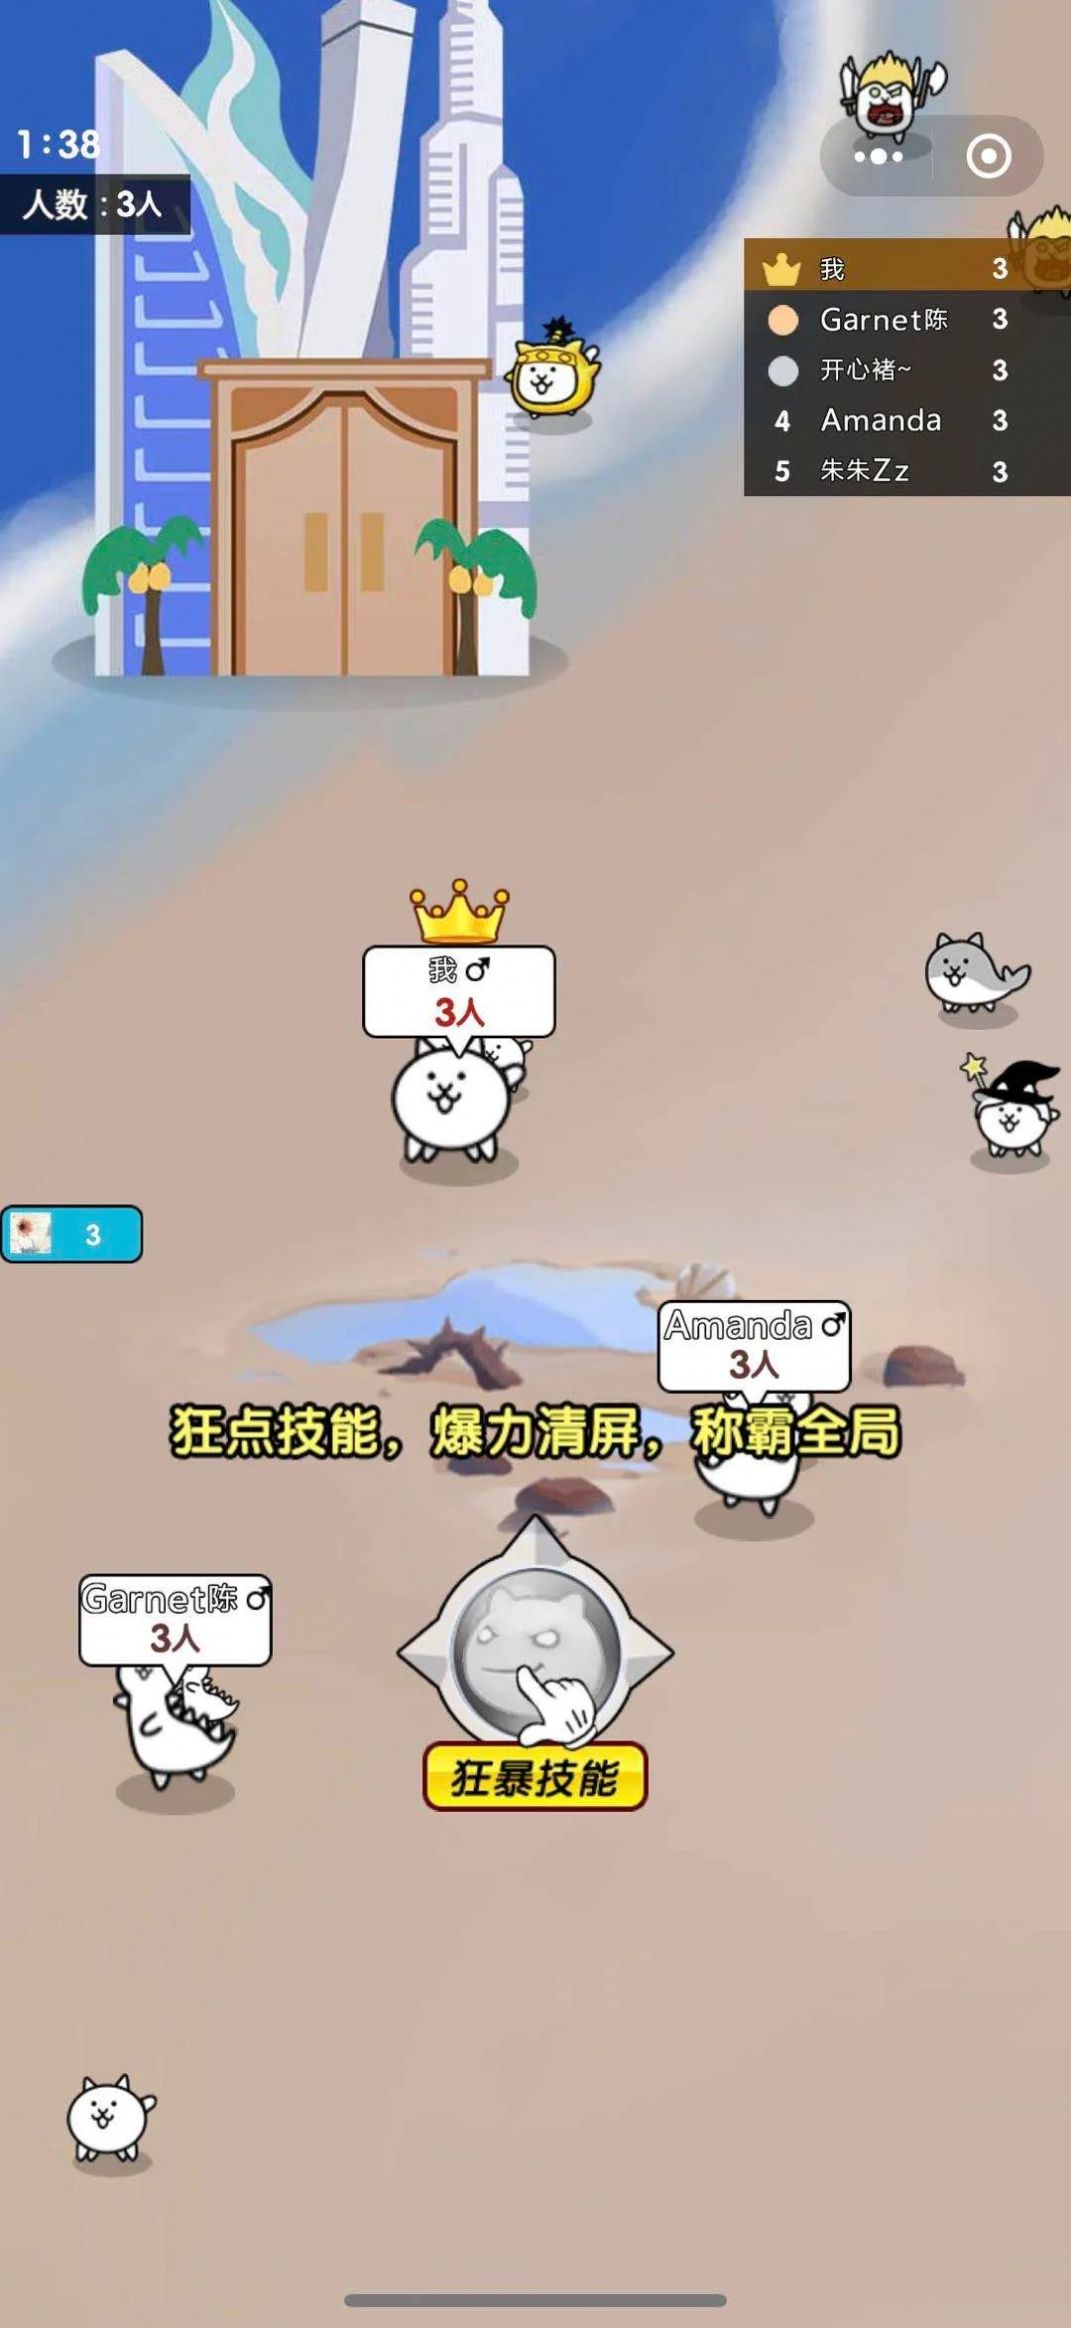 丑萌大作战游戏官方手机版图片1